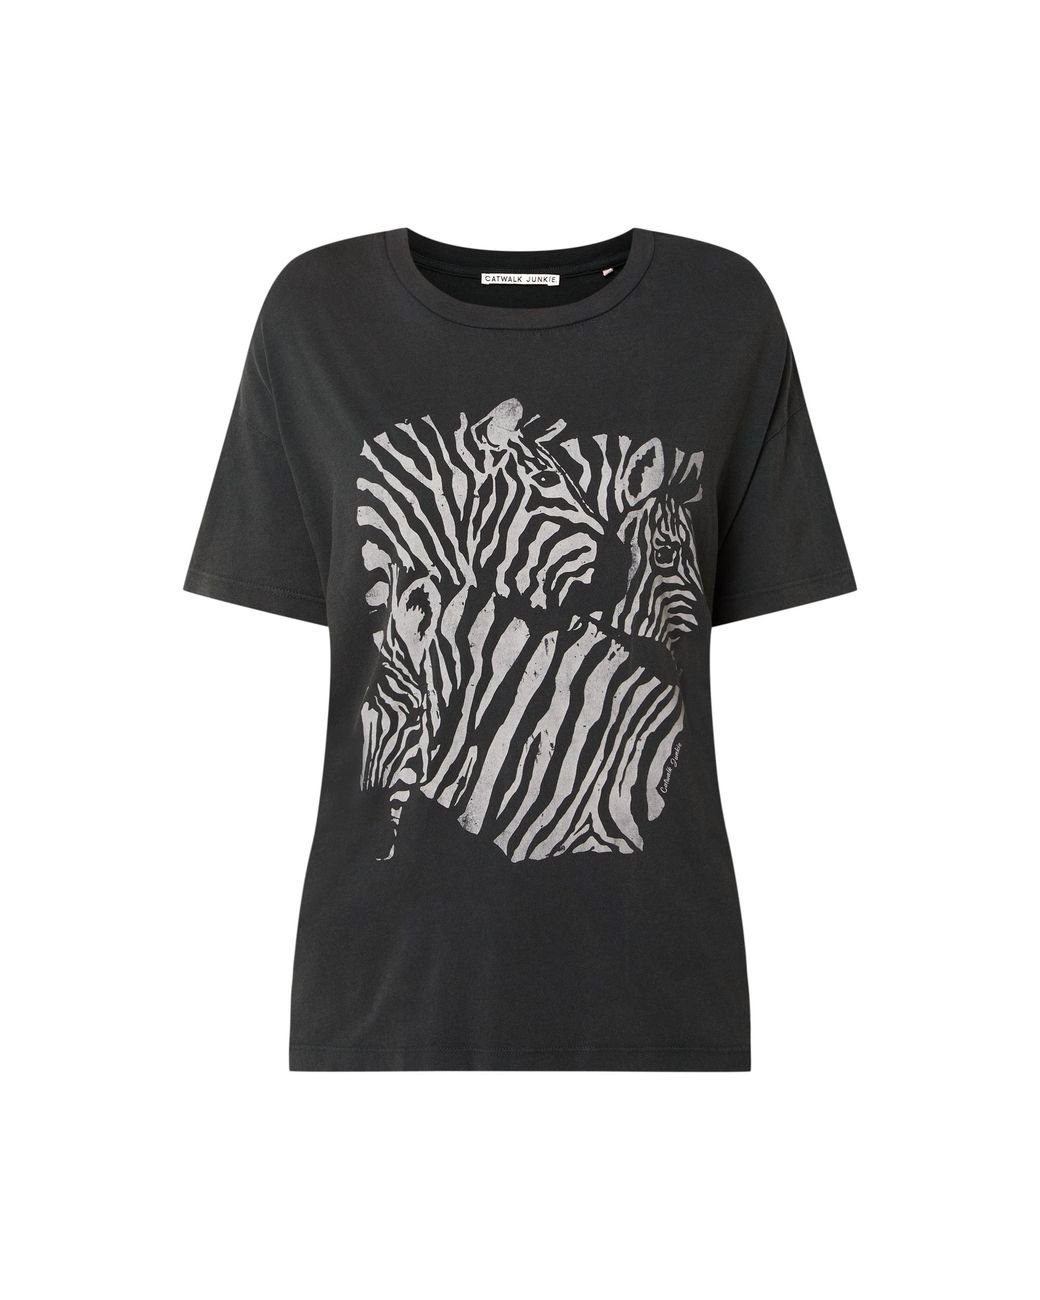 Catwalk Junkie T-Shirt mit Zebra-Print in Grau | Lyst DE